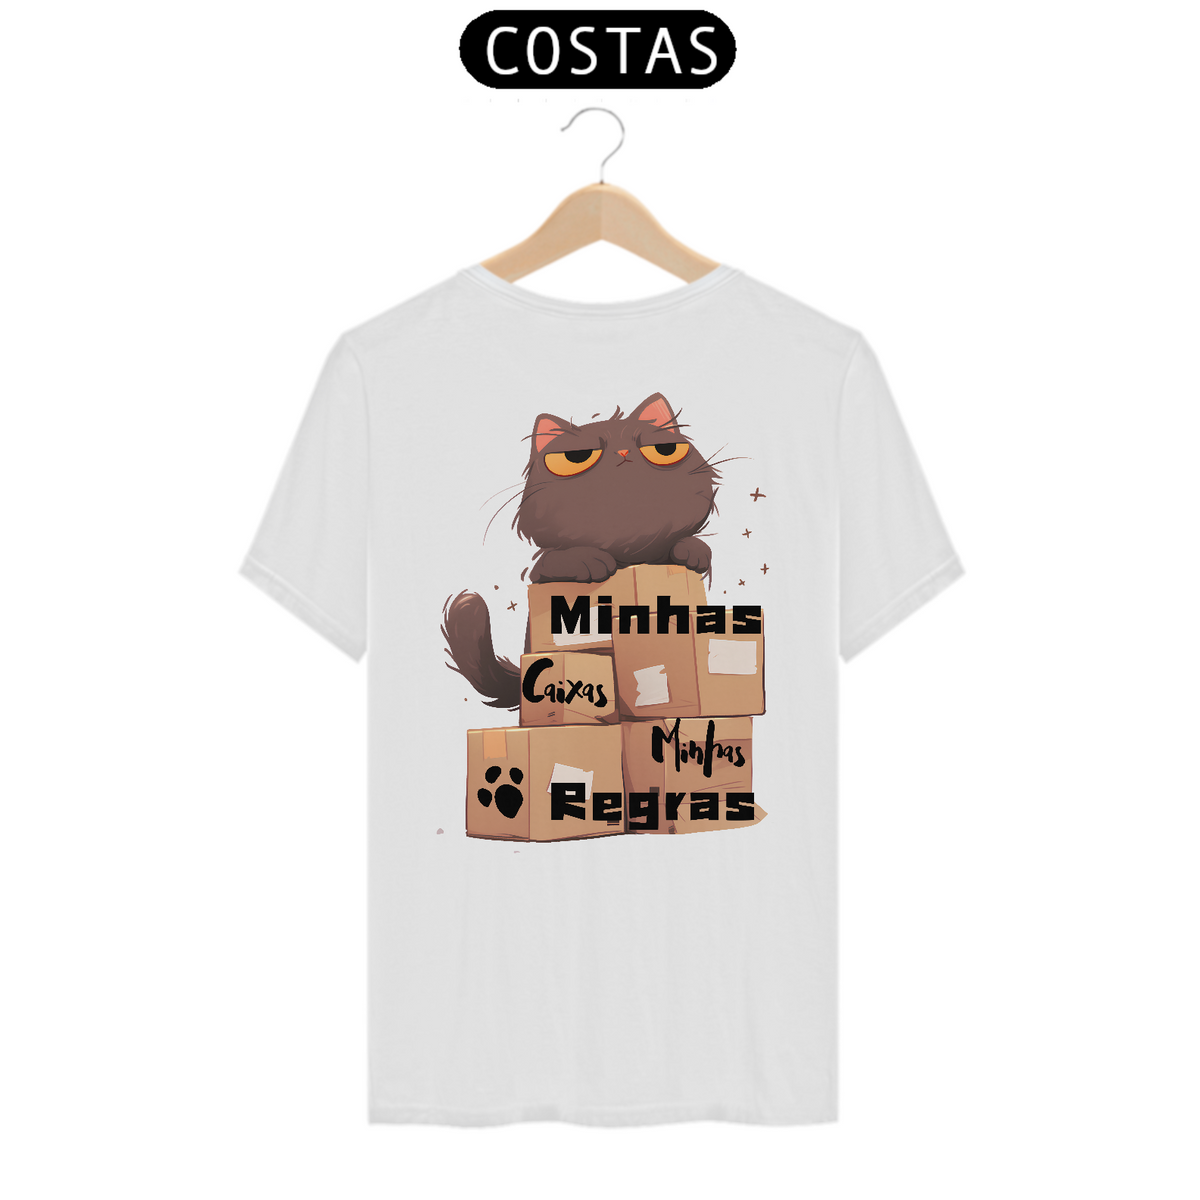 Nome do produto: QUALITY COSTA - MINAS CAIXAS MINHAS REGRAS